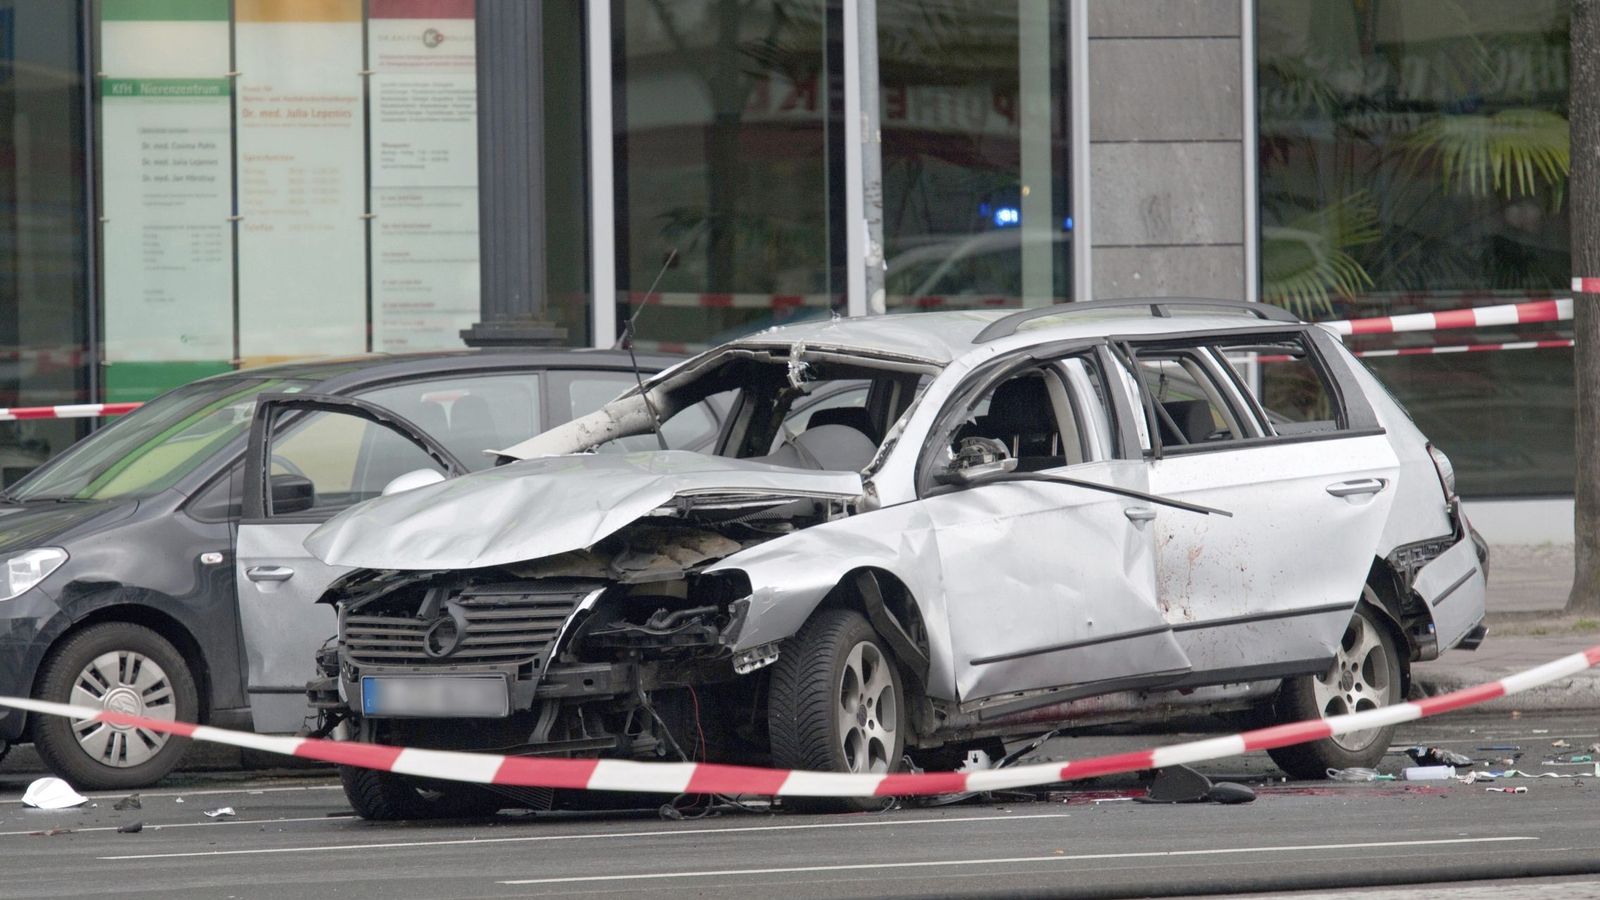 Foto: La Policía de Berlín descartó que haya más explosivos en el lugar donde murió un conductor al estallar una pequeña bomba en su vehículo (Efe).